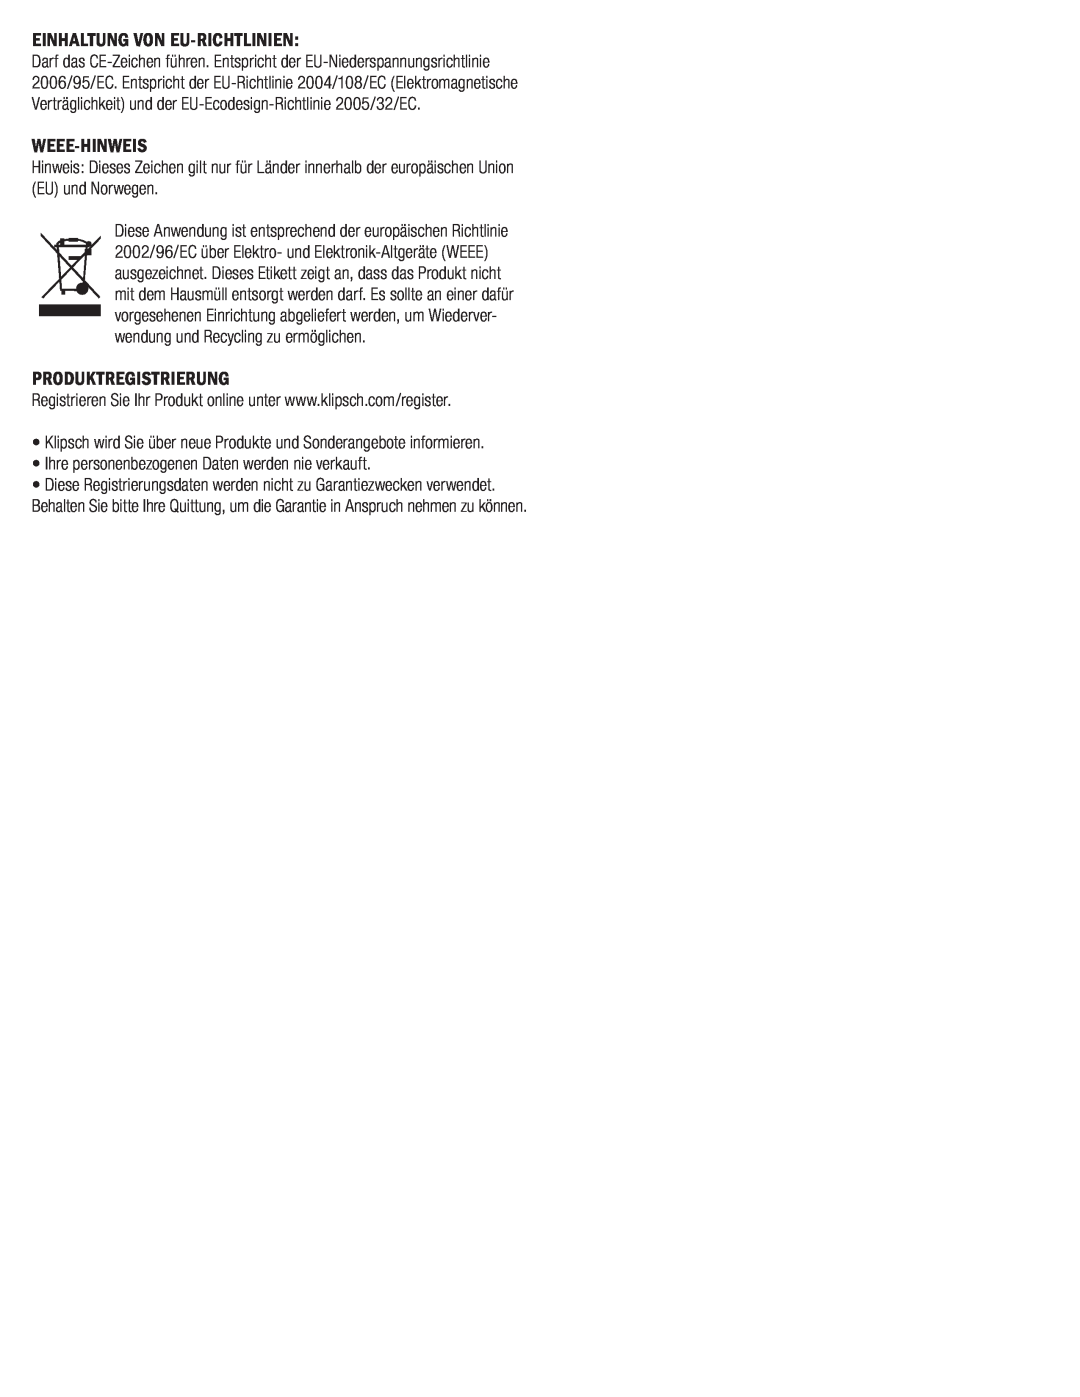 Klipsch SYNERGY-F-30 owner manual Einhaltung Von Eu-Richtlinien, Weee-Hinweis, Produktregistrierung 